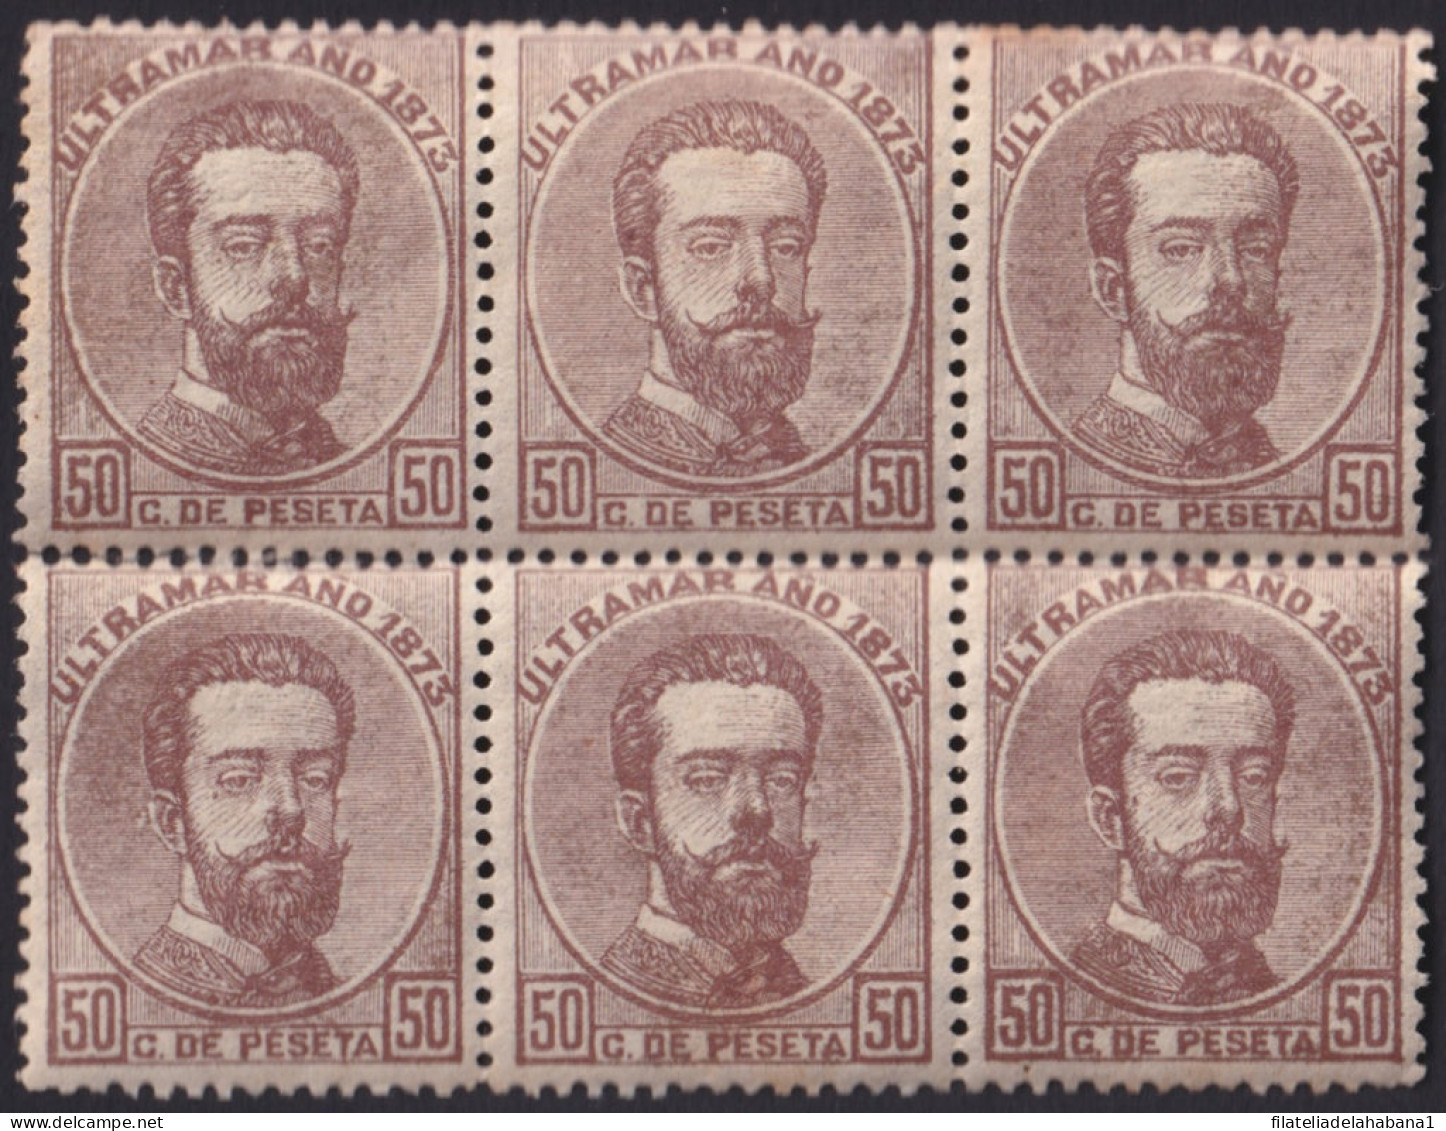 1873-109 CUBA ANTILLAS ESPAÑA SPAIN 1873 50c AMADEO I FINE PAPER CALCADO A REVERSO. - Voorfilatelie